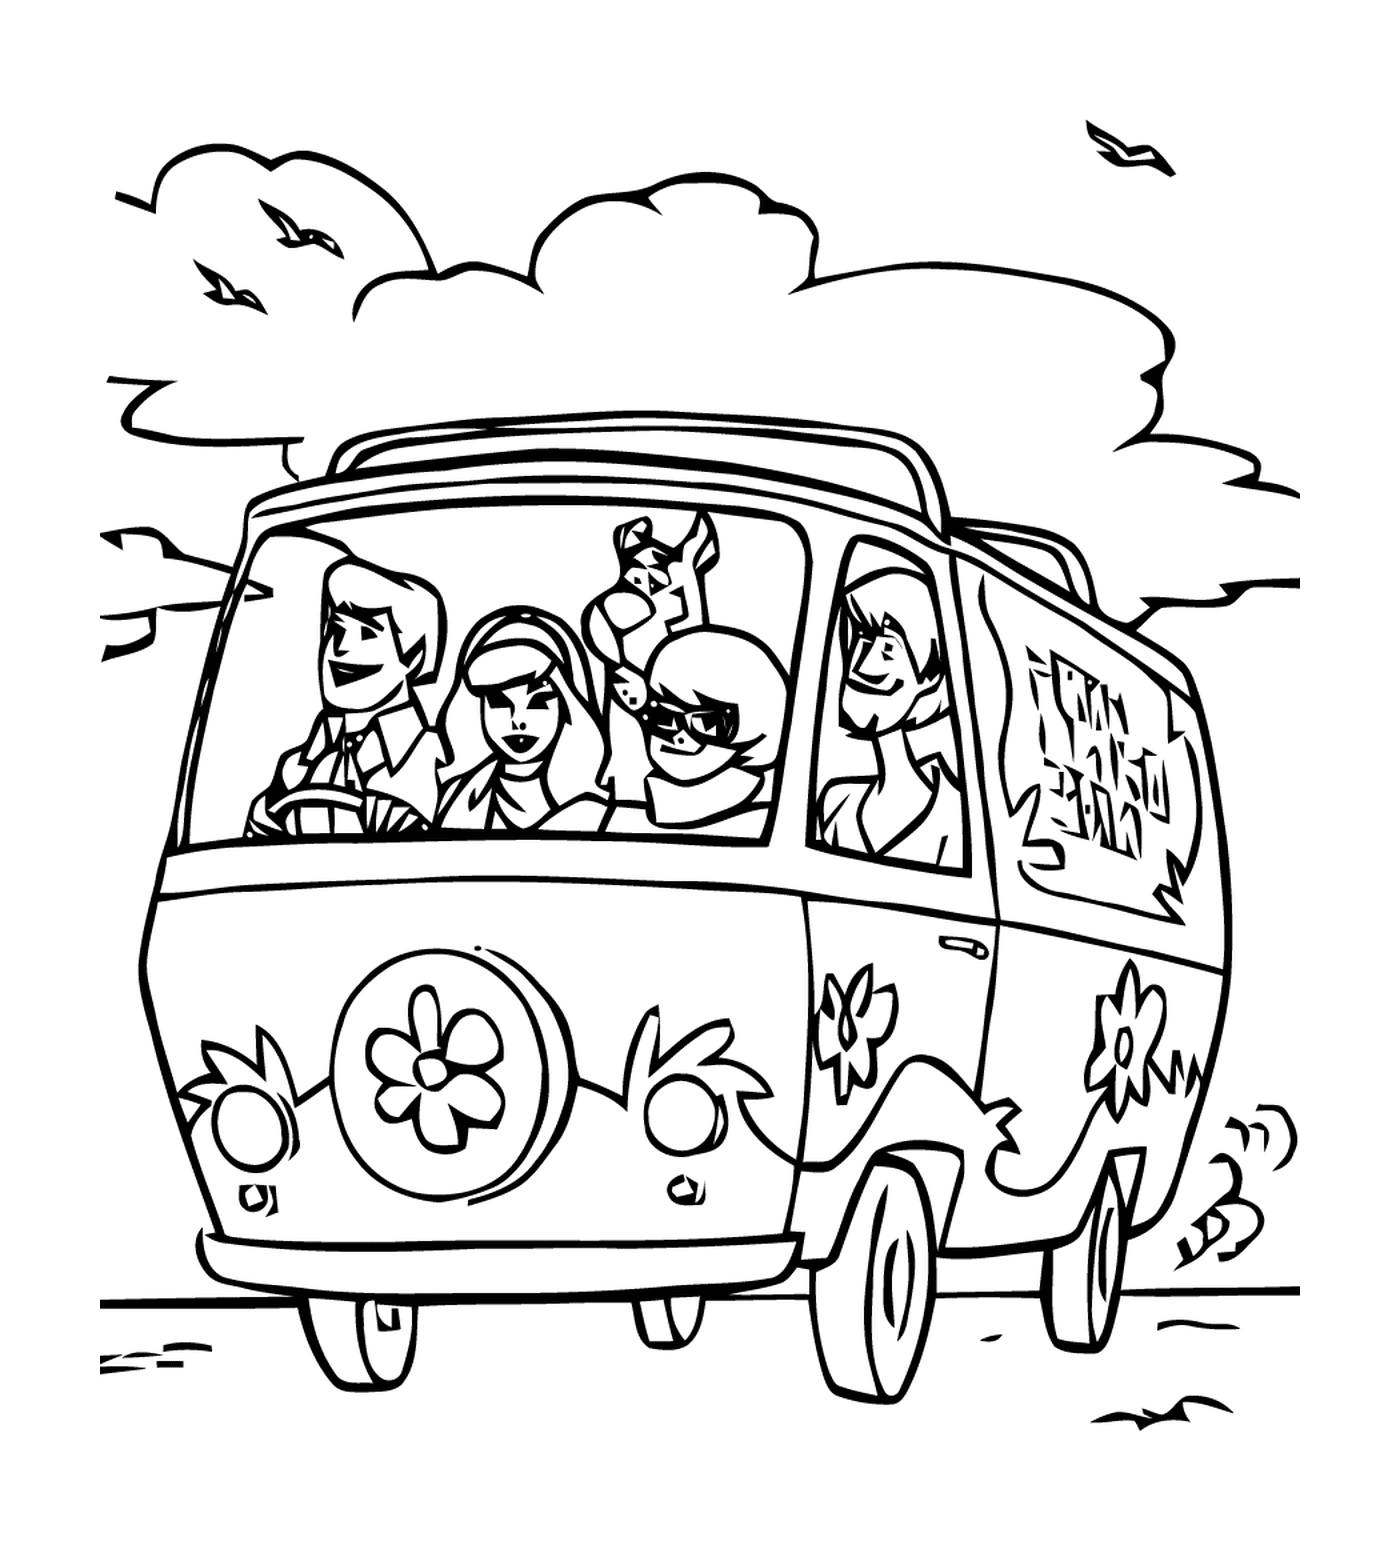  Группа людей в машине на дороге 